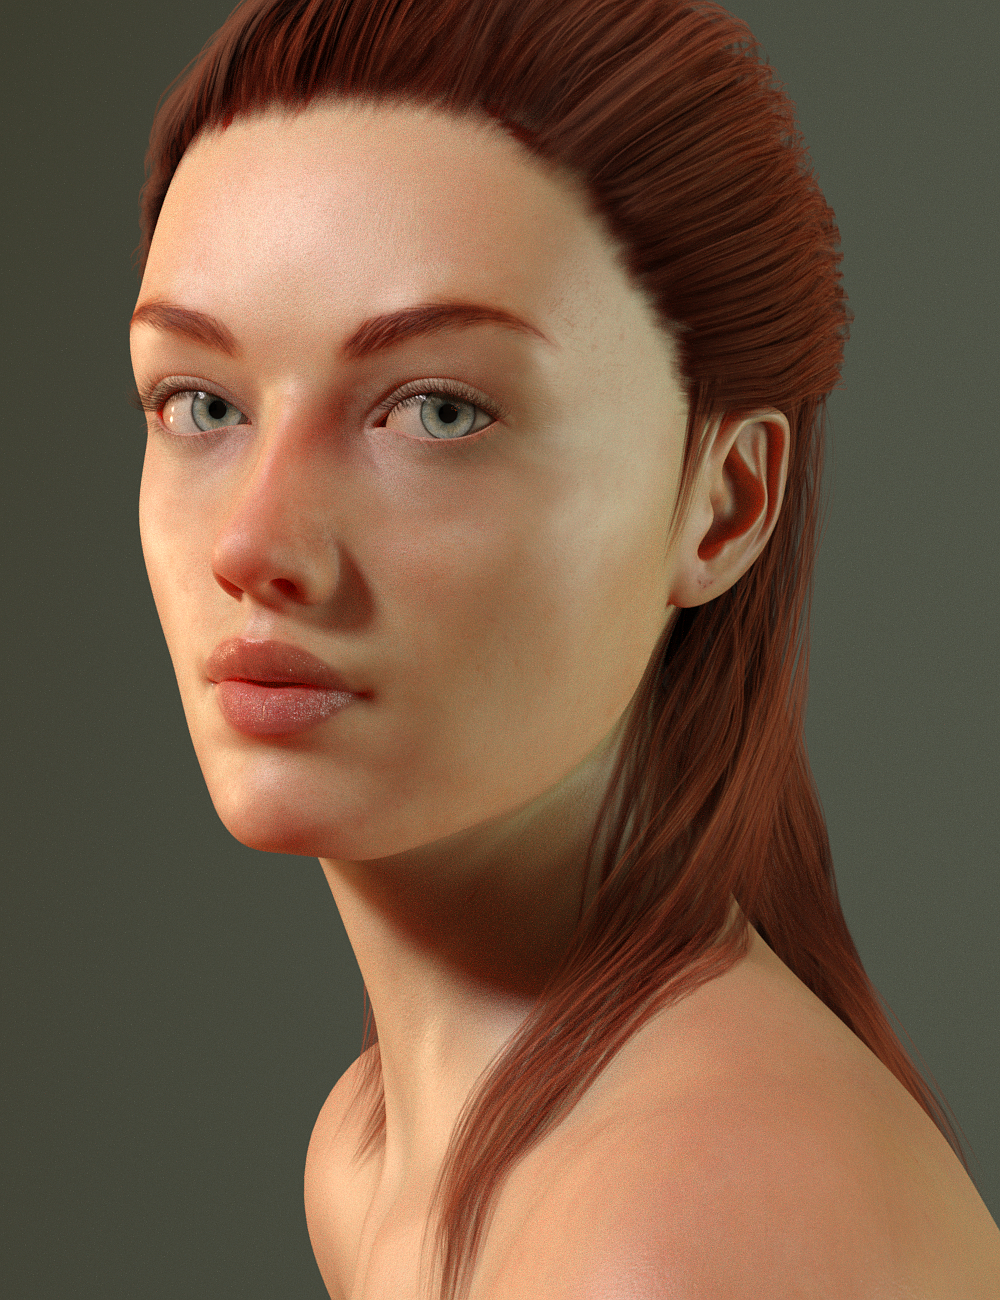 Natille for Genesis 8 Female by: Toyen, 3D Models by Daz 3D